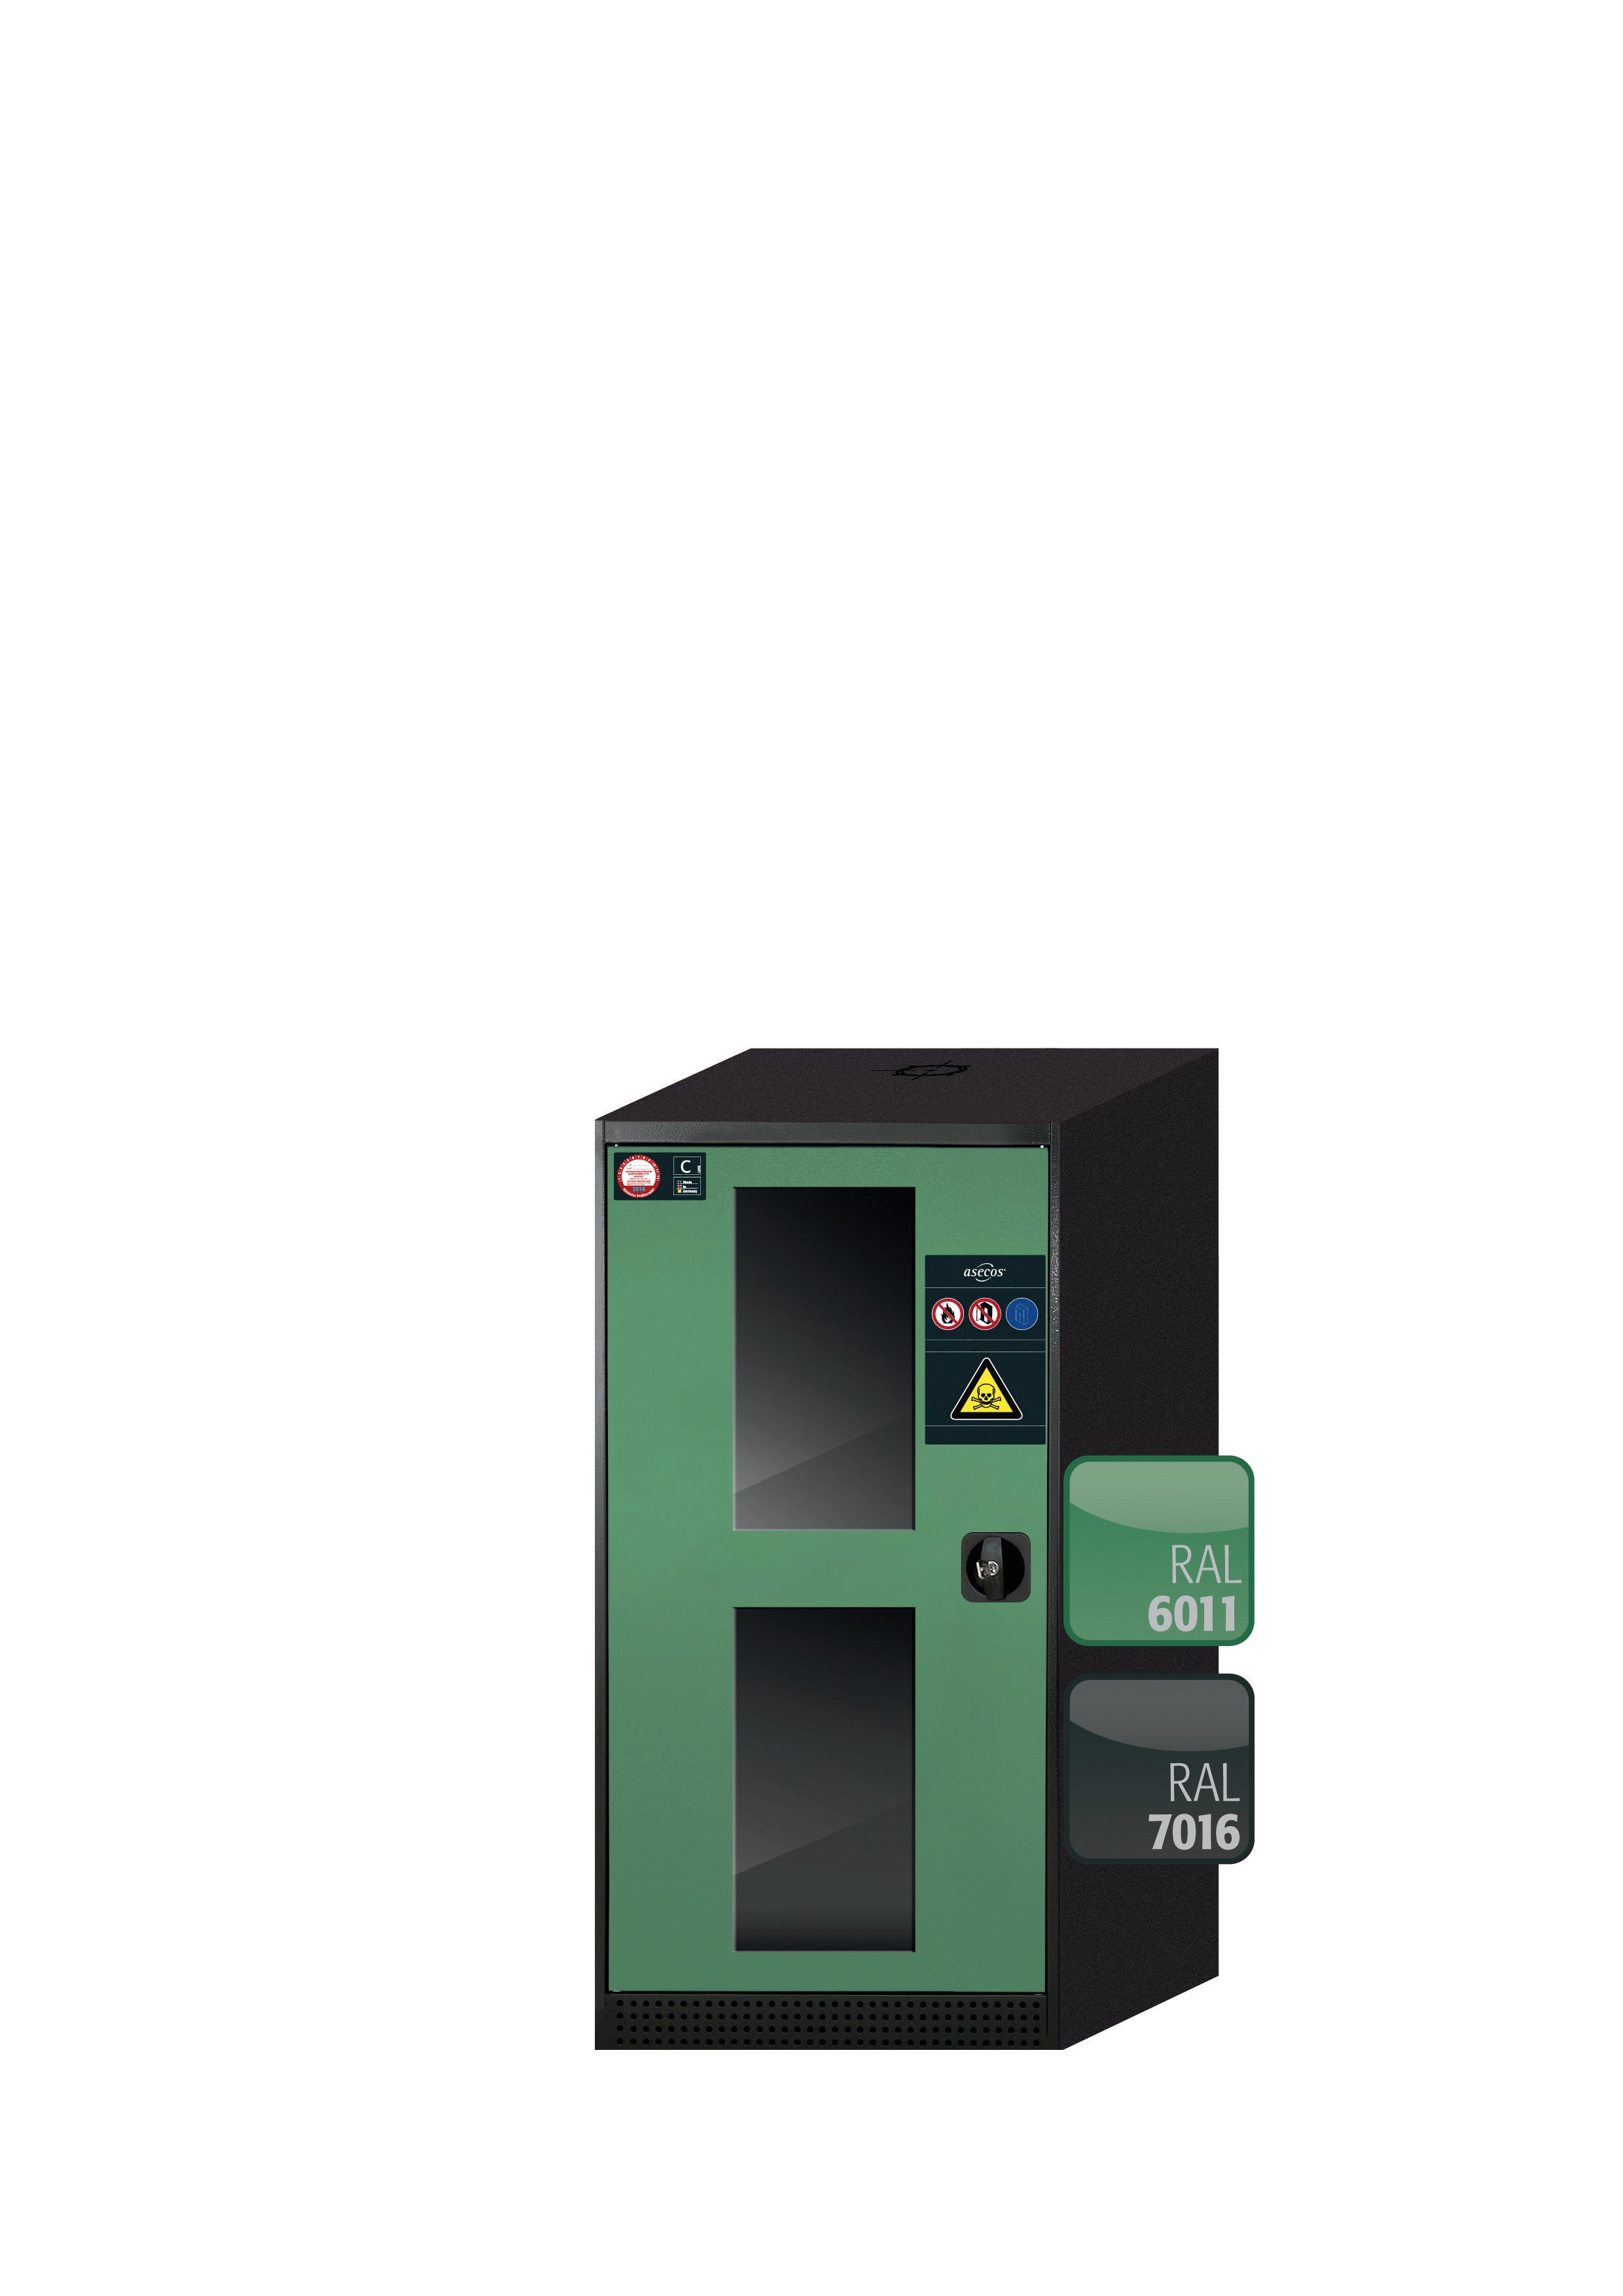 Armoire chimique CS-CLASSIC-G modèle CS.110.054.WDFW en vert réséda RAL 6011 avec 2 tiroirs coulissants pour étagères AbZ (tôle d'acier/polypropylène)